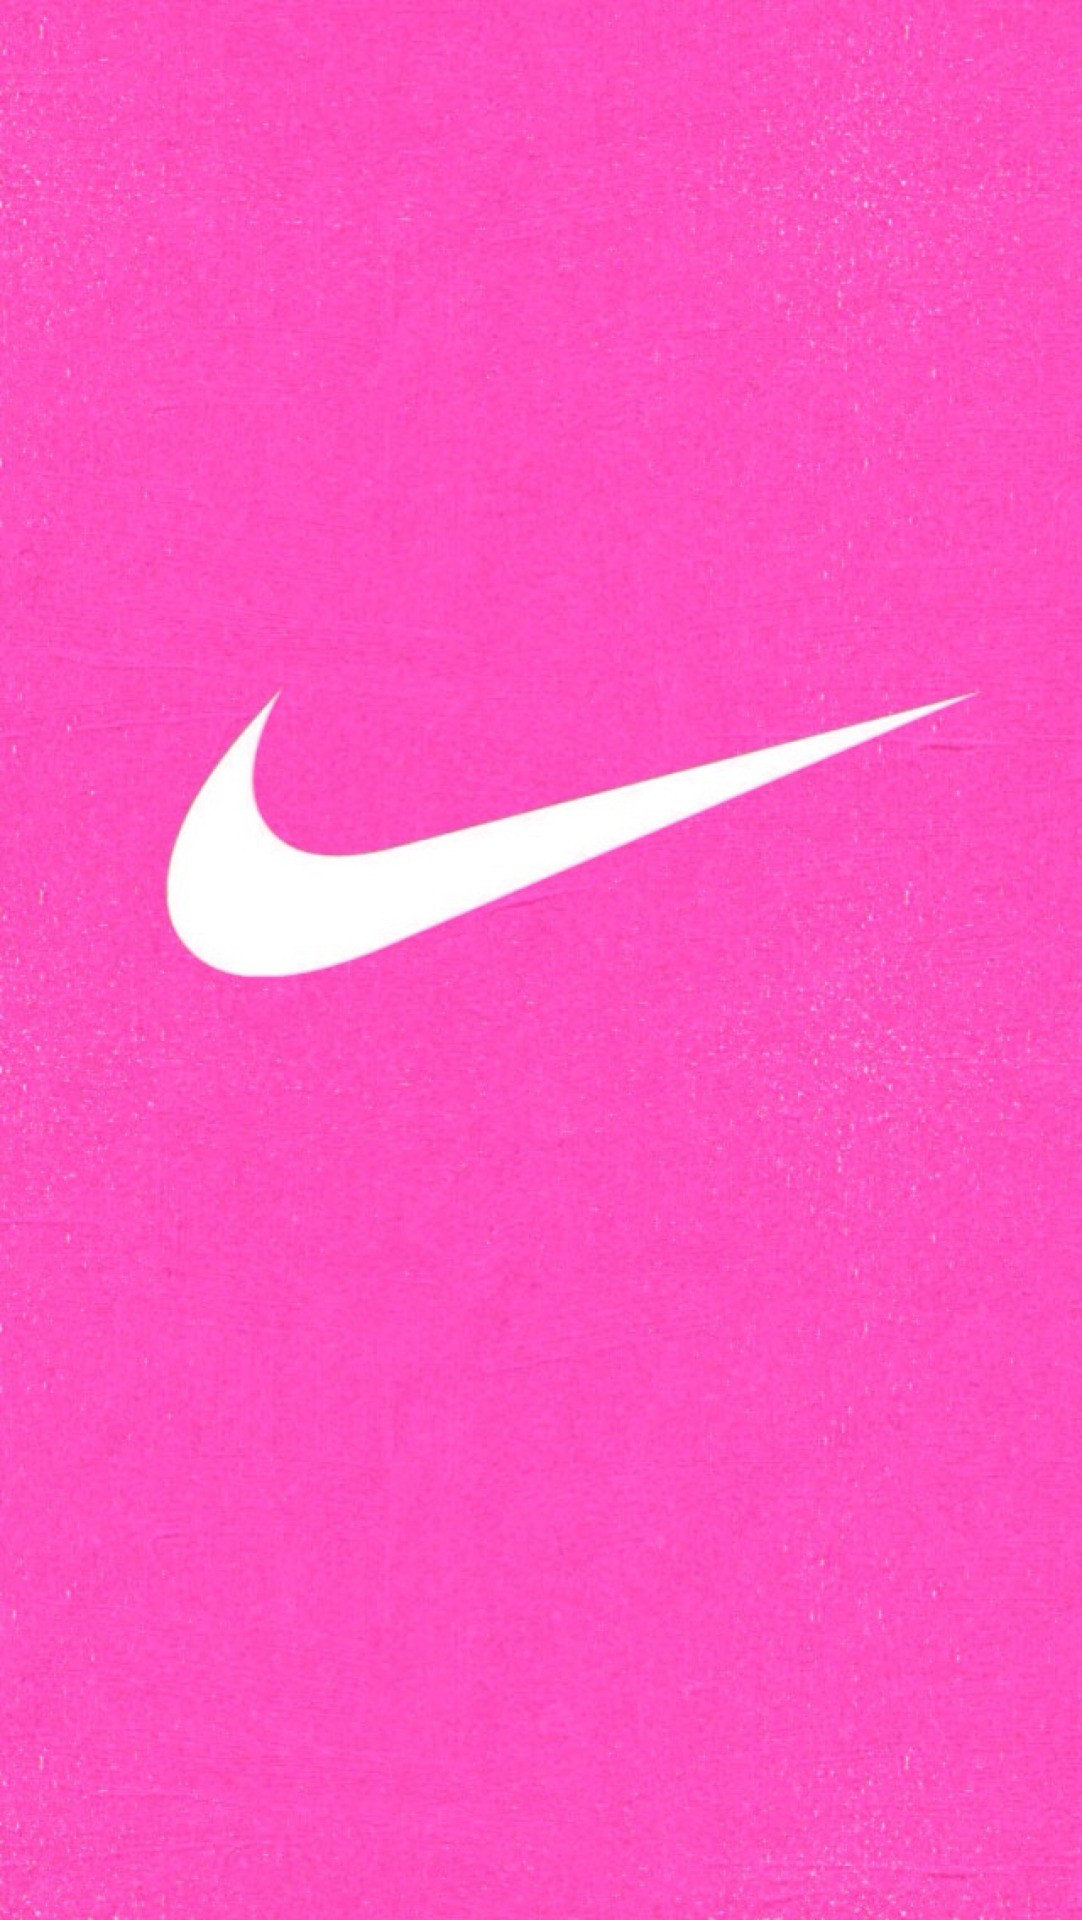 Hình nền Nike màu hồng là một sự lựa chọn hoàn hảo nếu bạn muốn tạo nên một không gian sống với phong cách nữ tính. Các kiểu chữ và logo Nike được thiết kế nổi bật trên nền màu hồng pastel, tạo nên một không gian sống phong cách và thơ mộng. Hãy cùng chiêm ngưỡng các hình nền Nike màu hồng đẹp mắt trong hình ảnh liên quan.